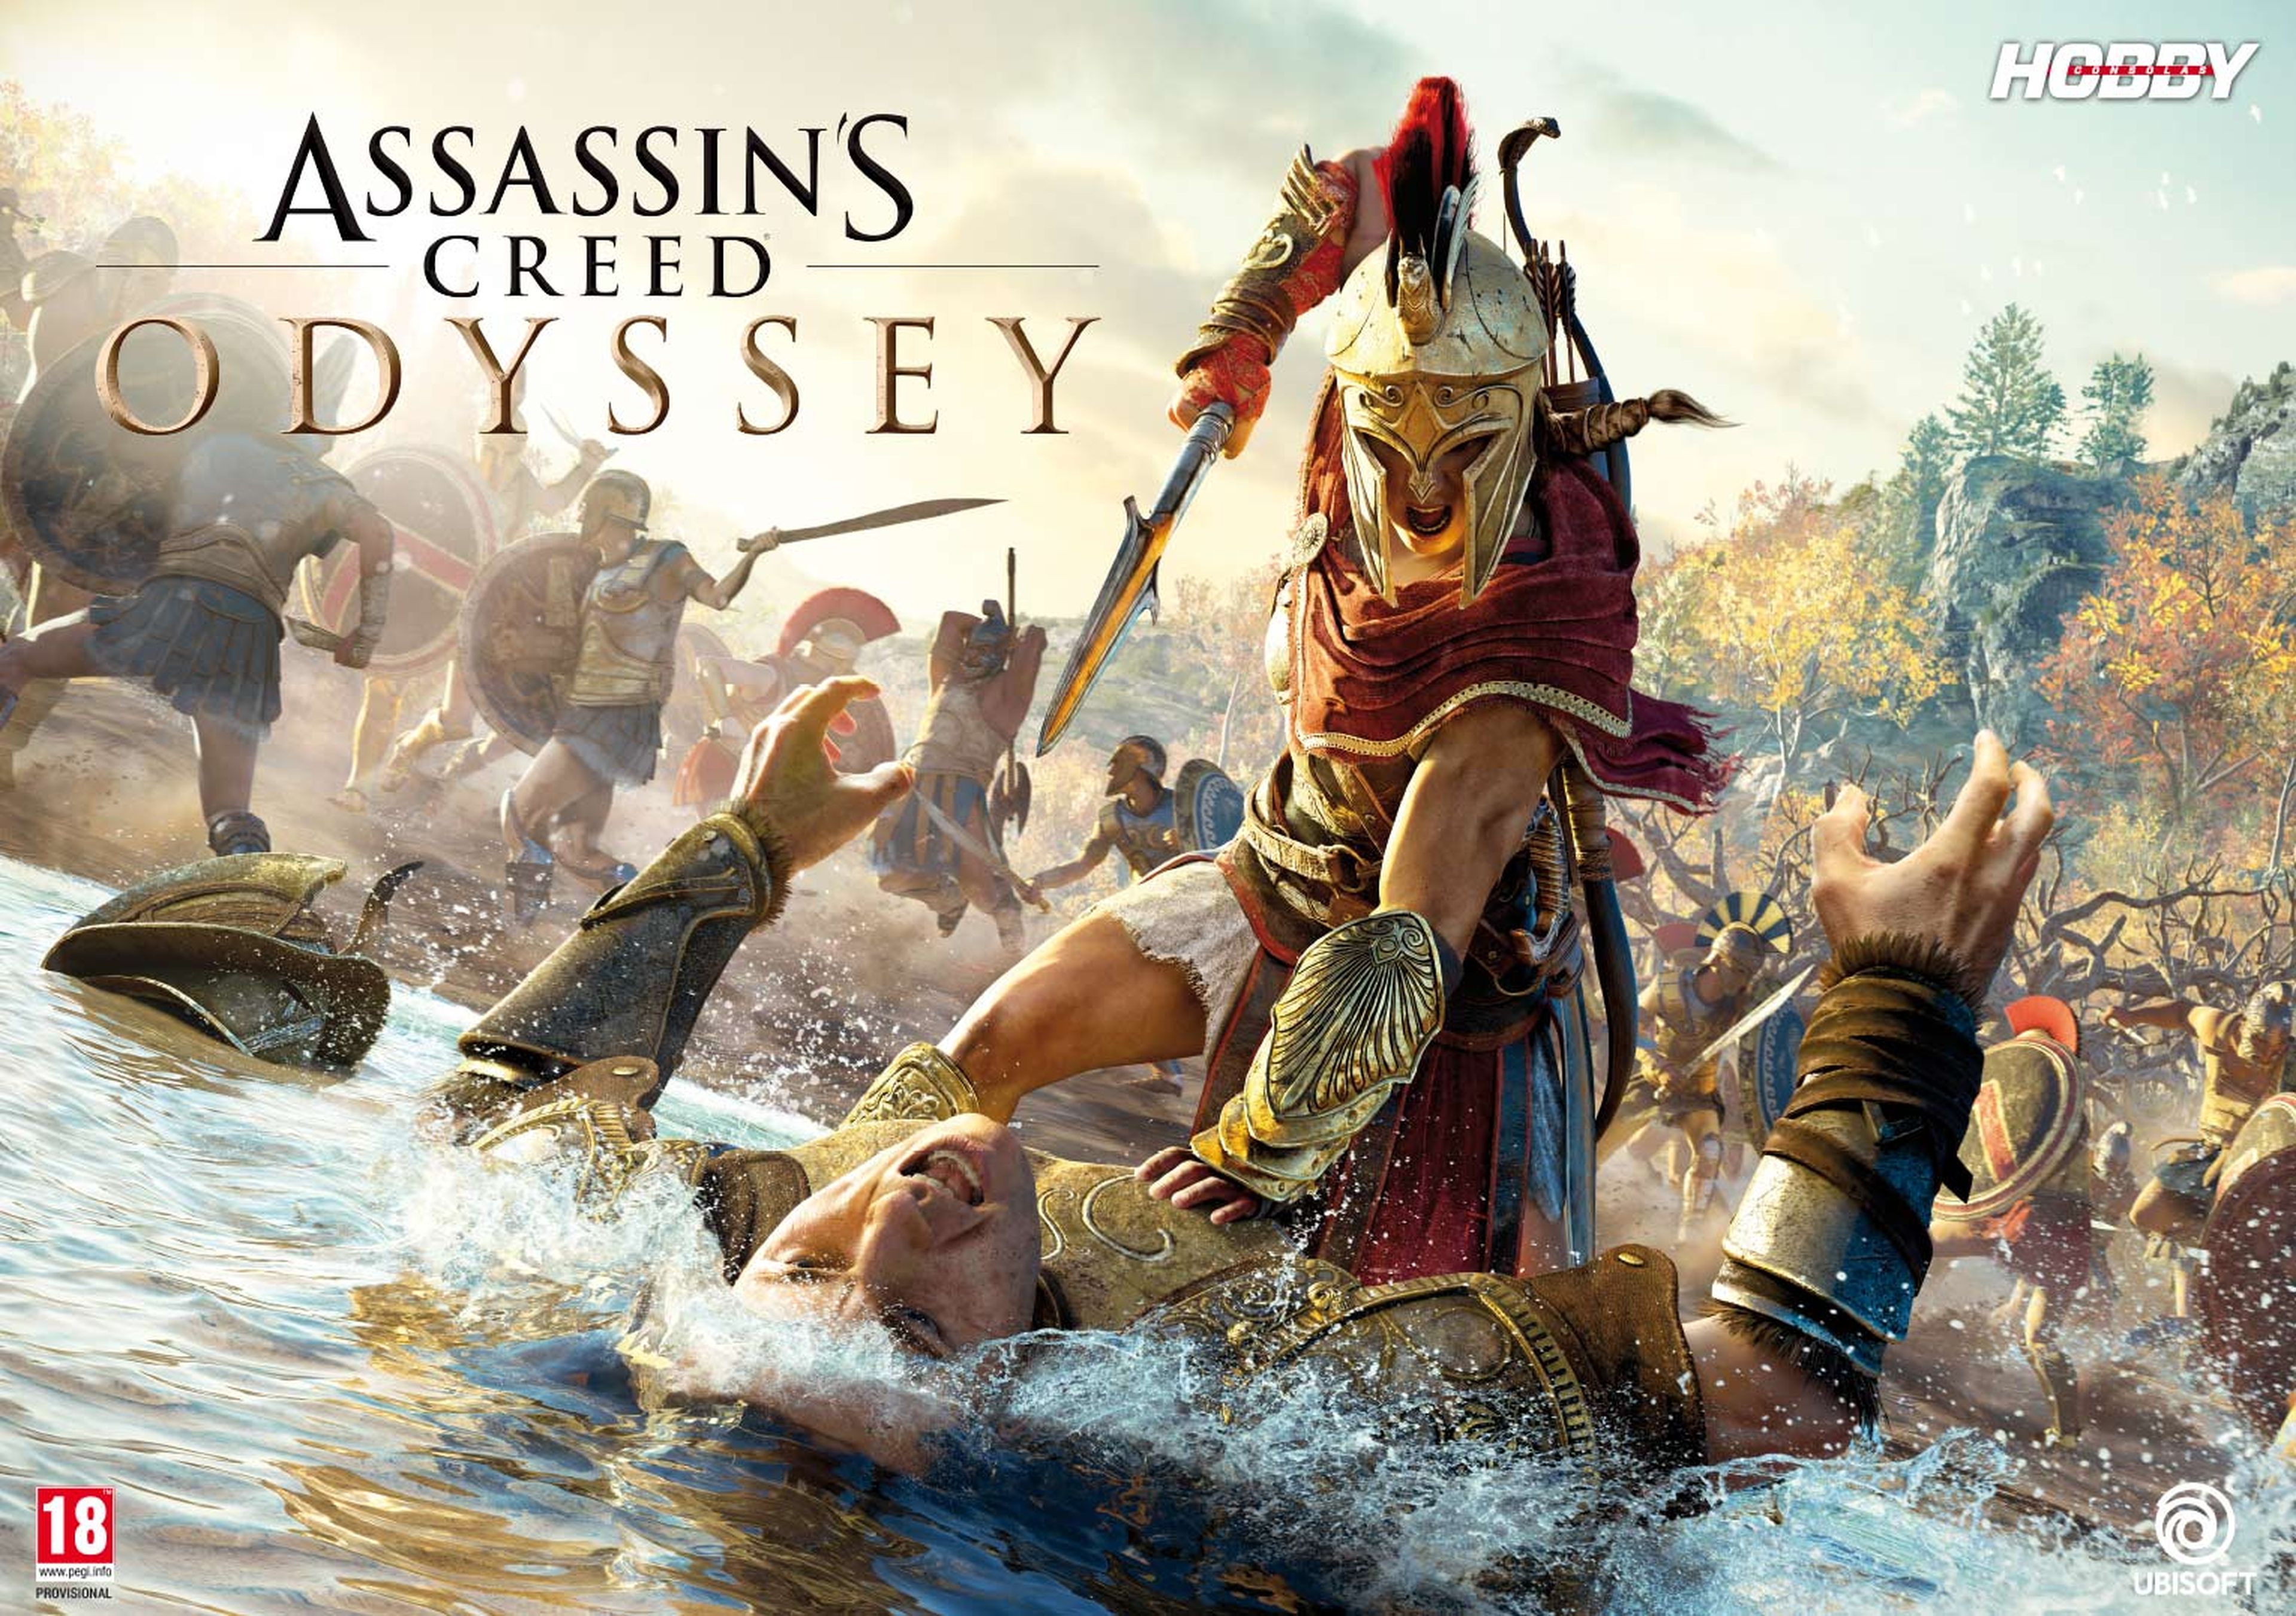 Hobby Consolas 327, a la venta con pósters de Assassin's Creed Odyssey y Forza Horizon 4